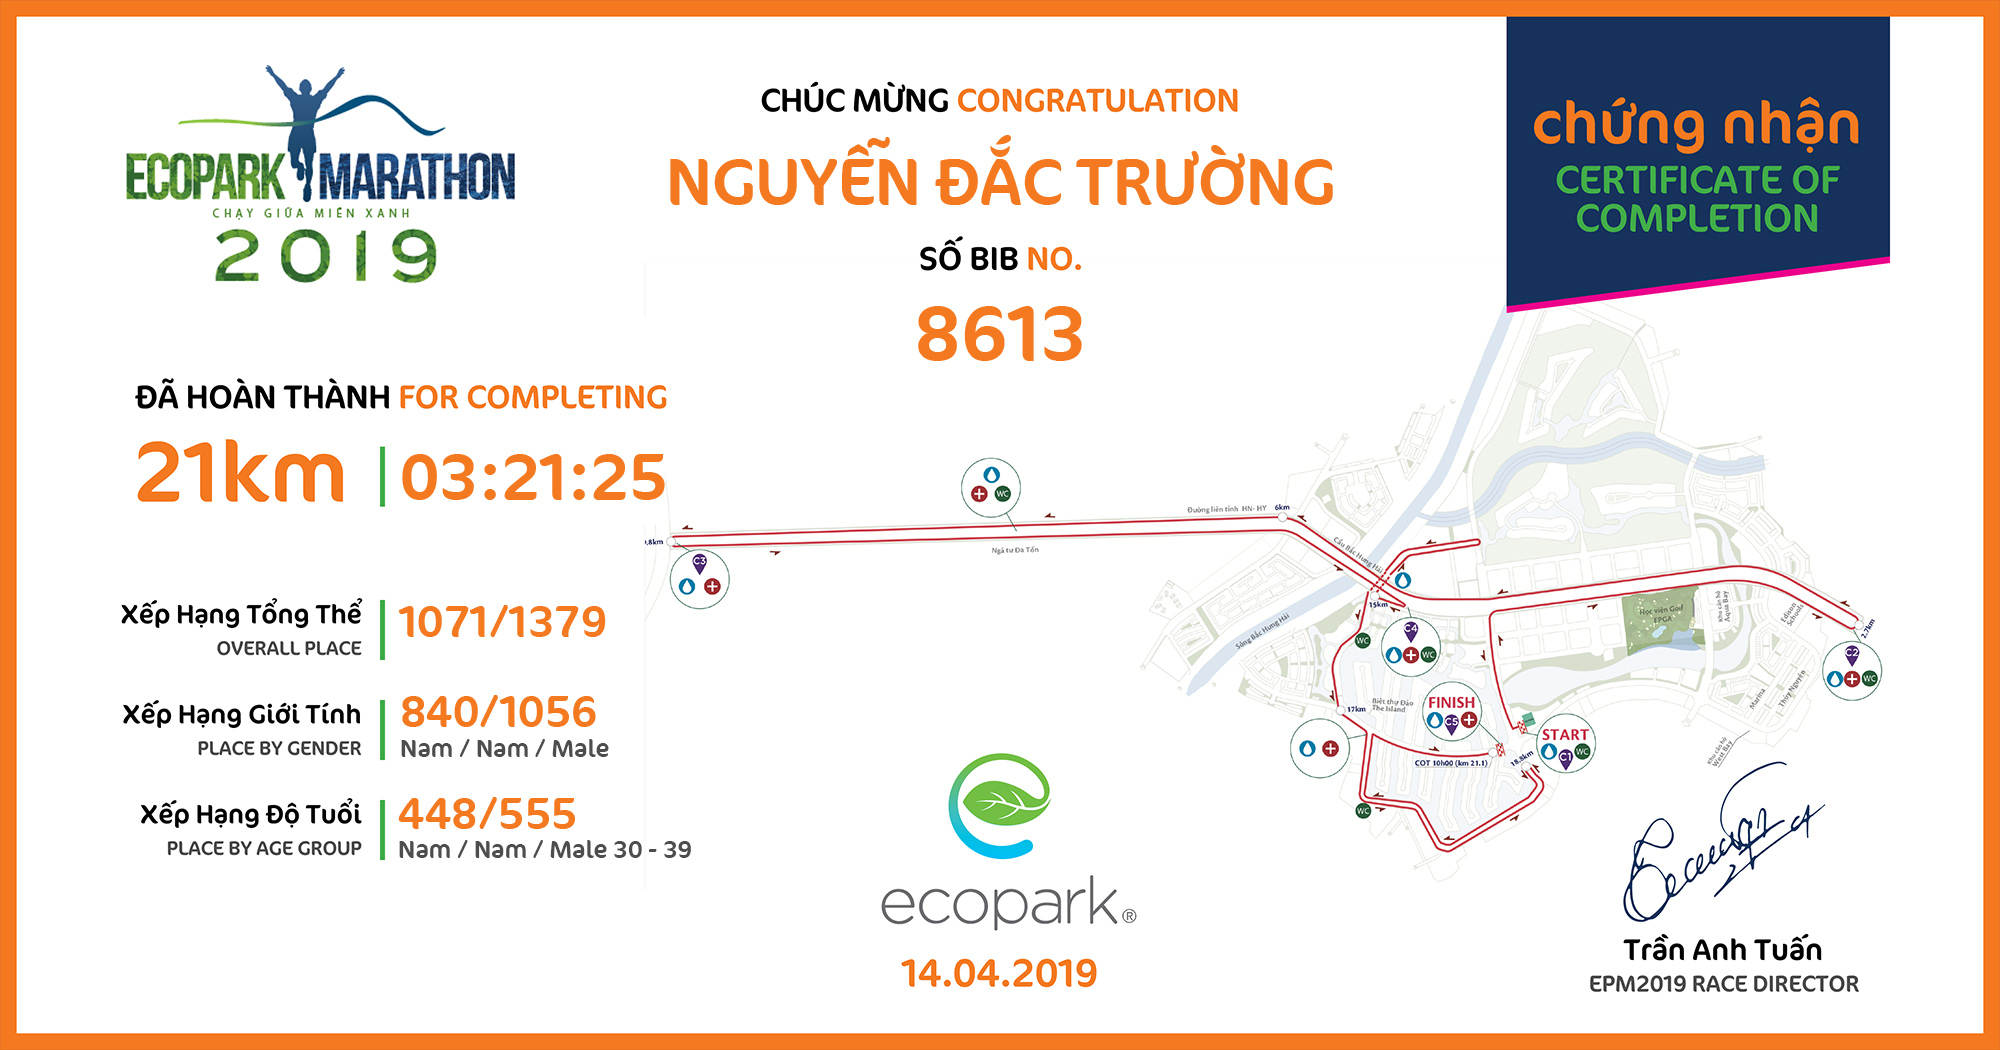 8613 - Nguyễn Đắc Trường